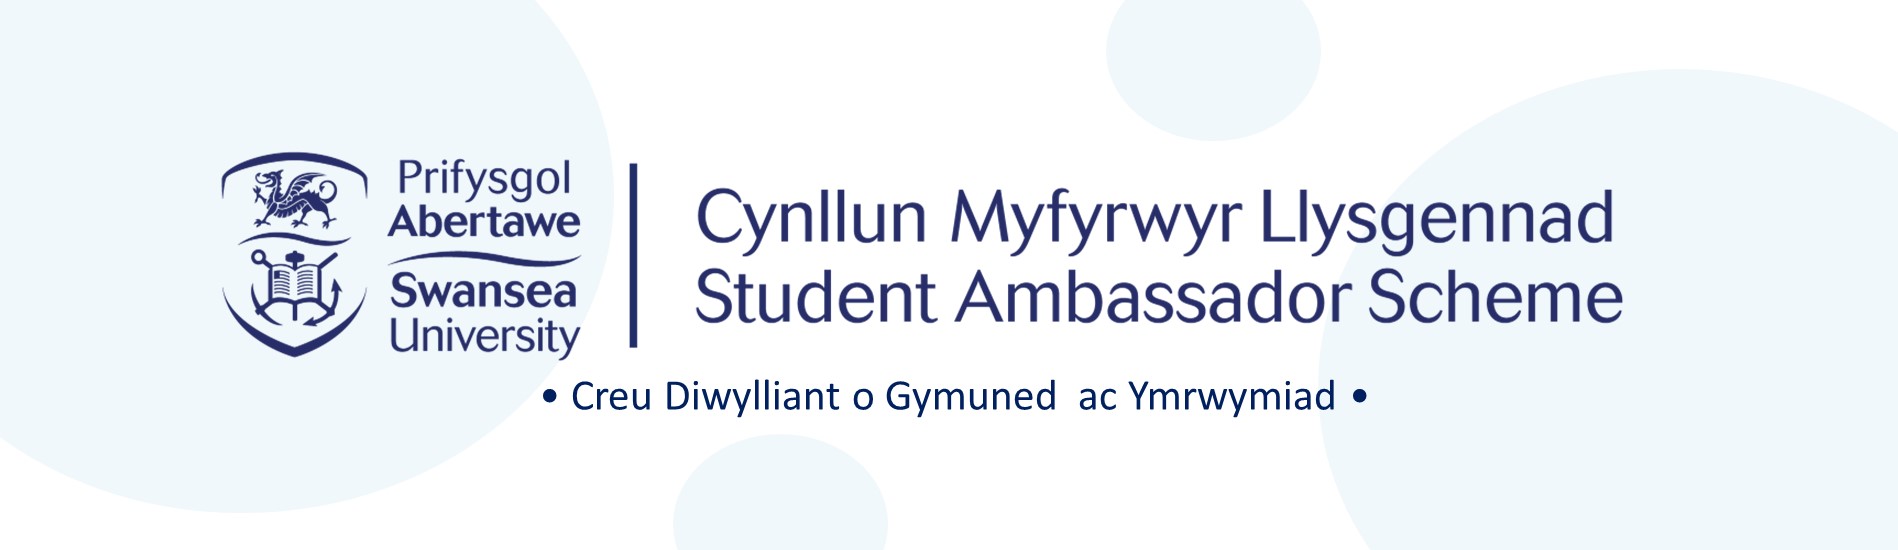 Student Ambassador Scheme Logo Reads
Prifysgol Abertawe Cynllun Myfyrwyr Llysgennad
Swansea University Student Ambassador Scheme
Creu Diwylliant o Gymuned ac Ymrwymiad
